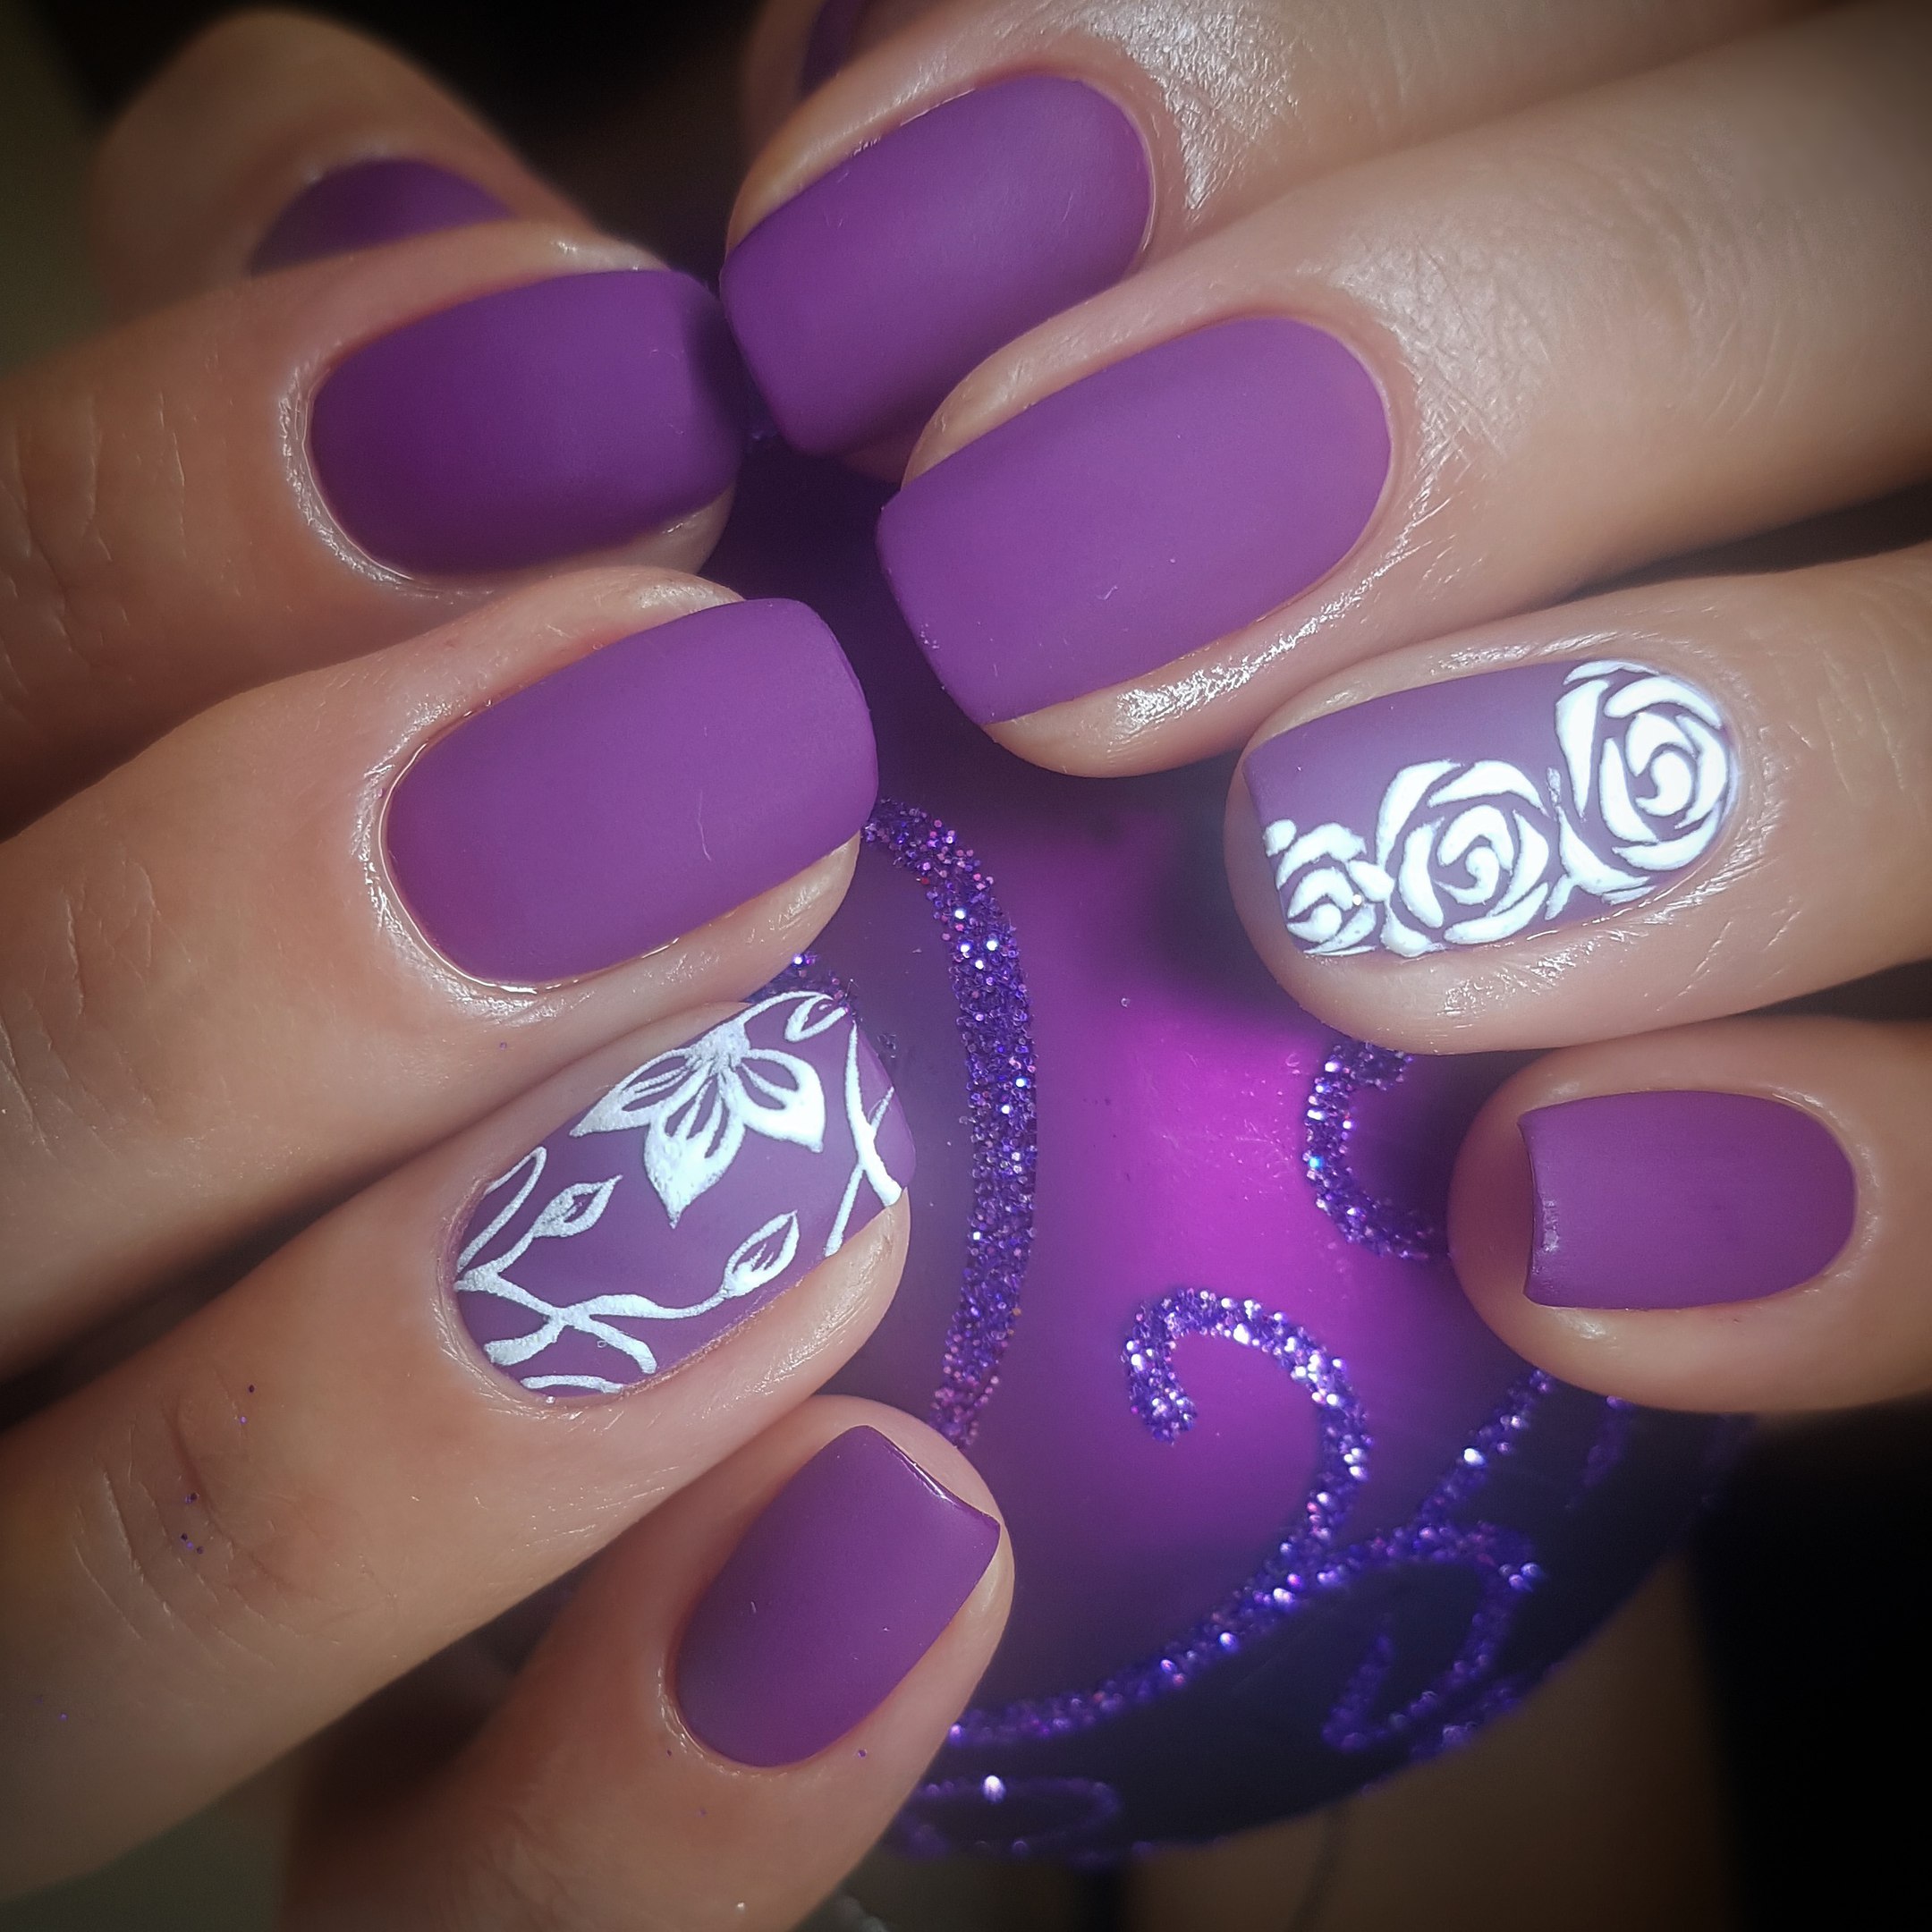 Фиолетовый Маникюр На Короткие Ногти Фото